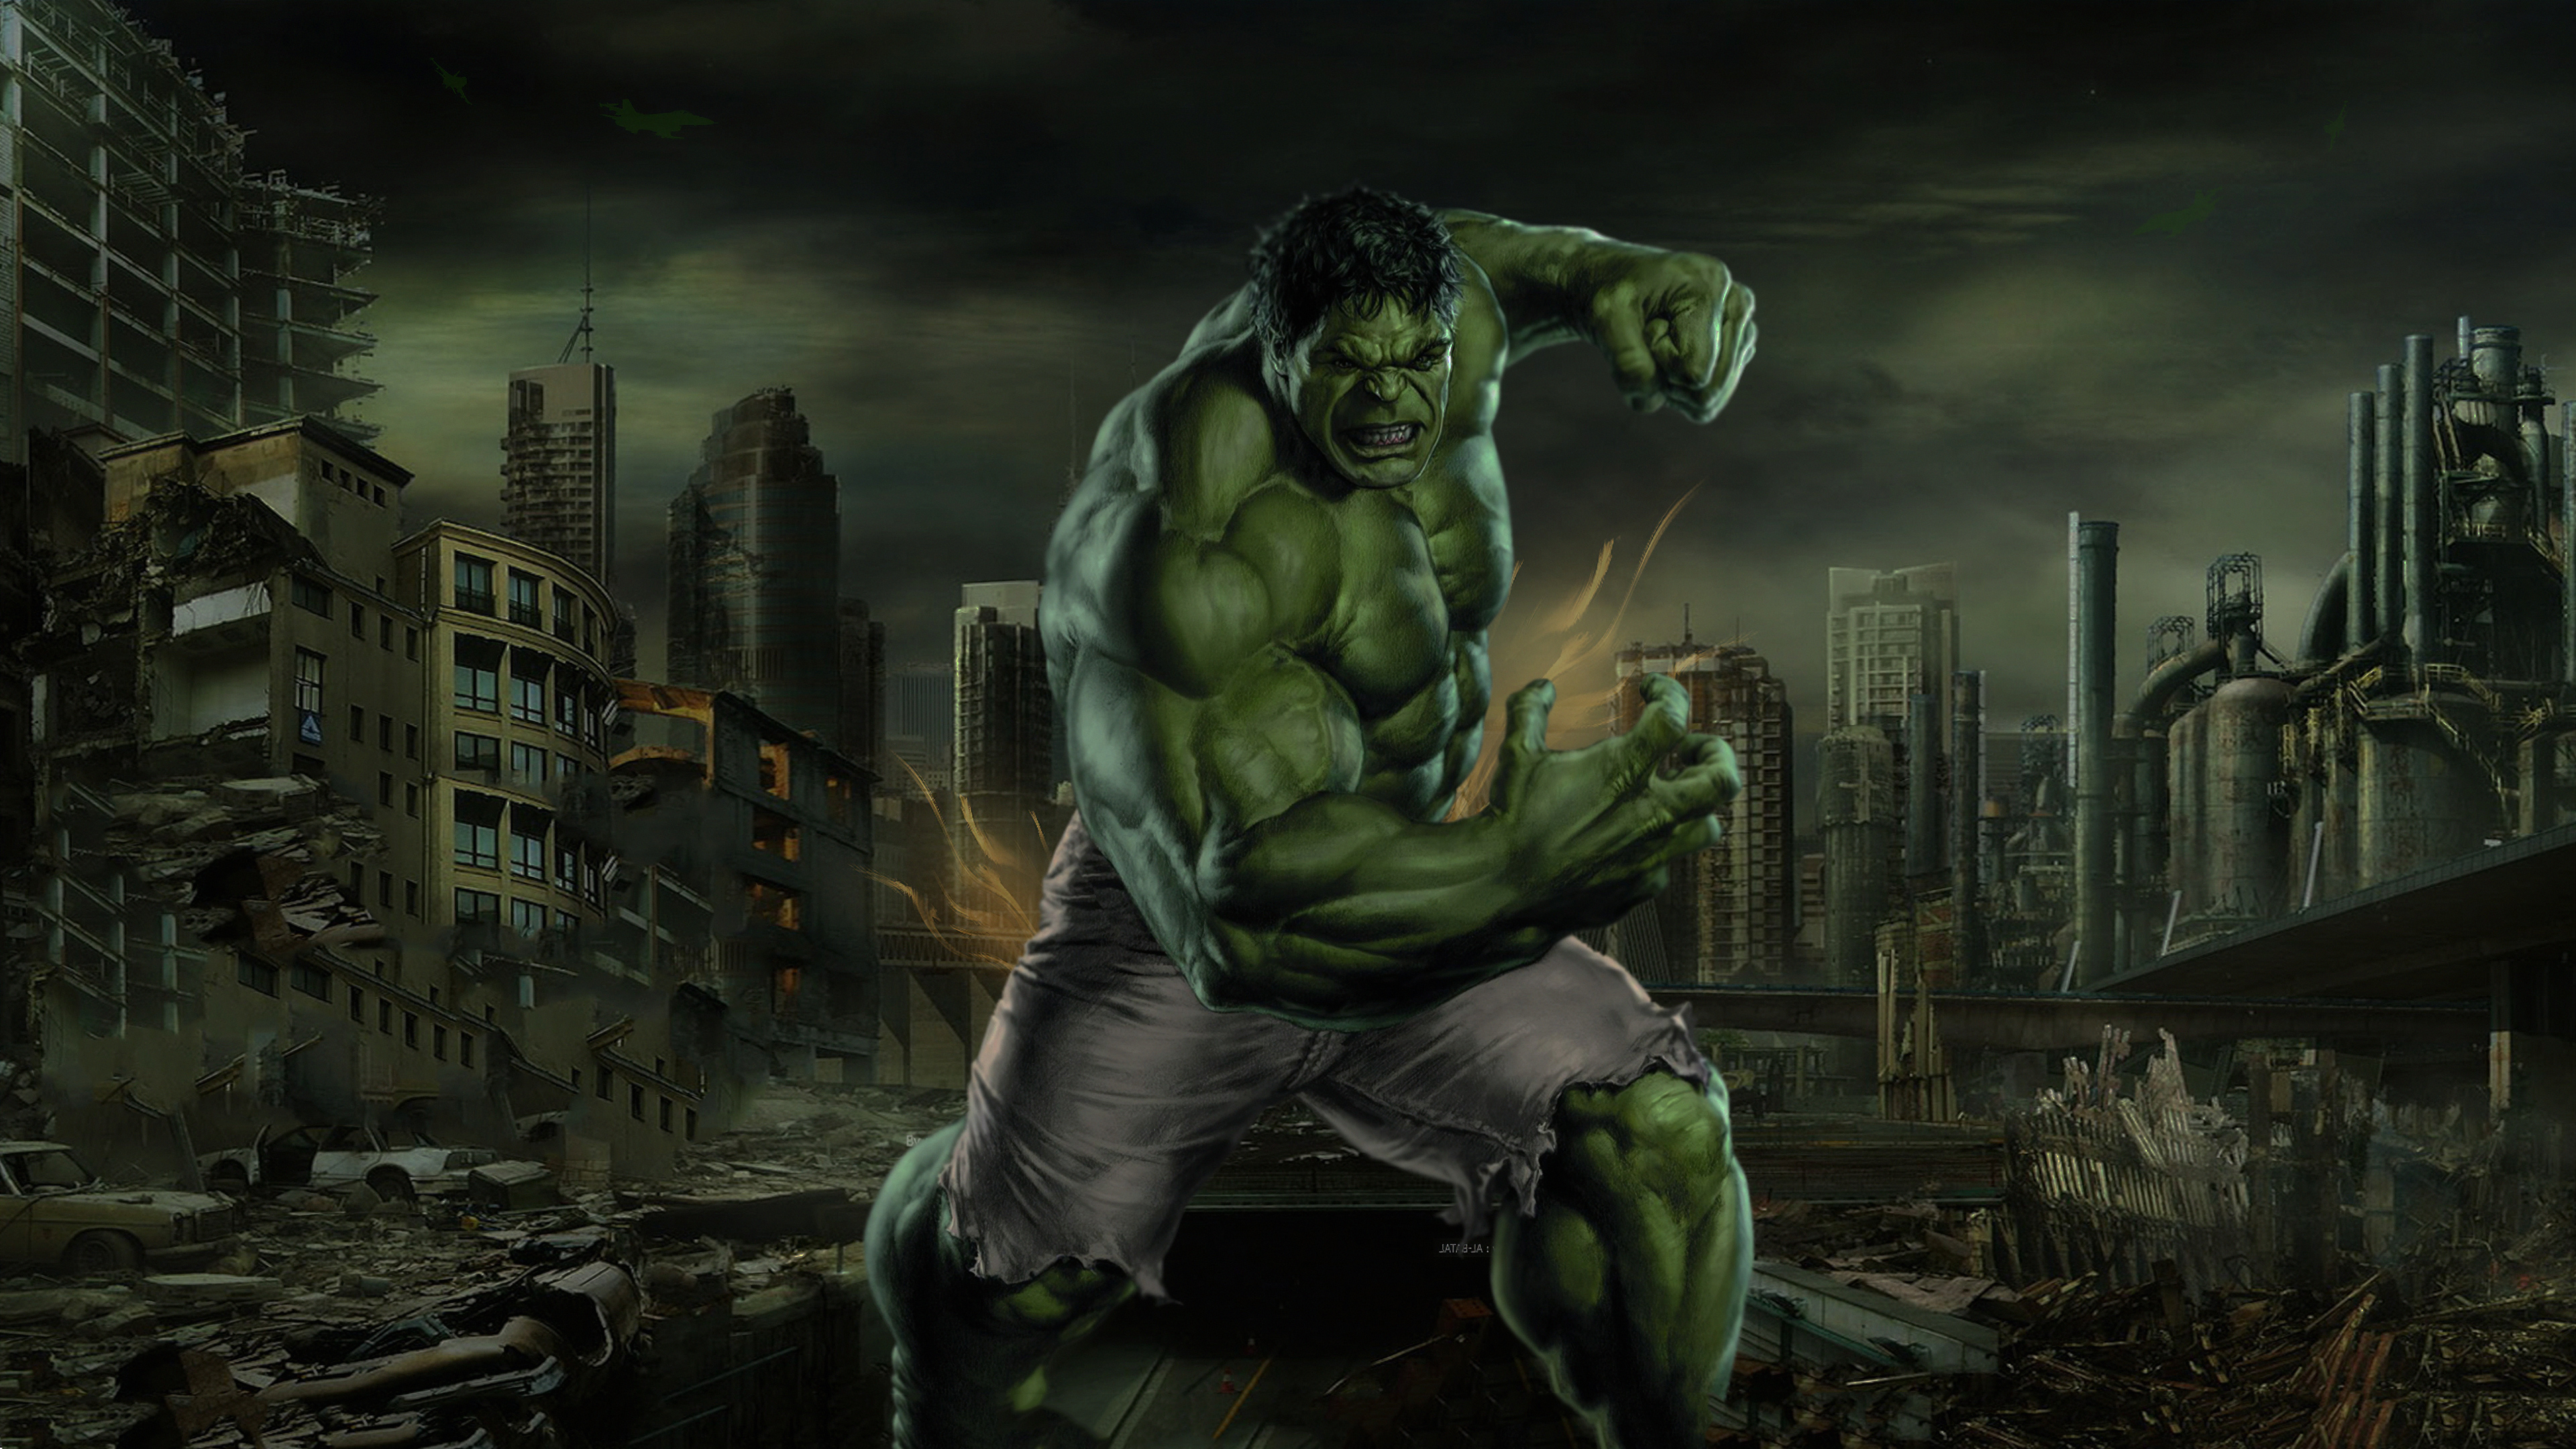 hulk smash 4k 1565052920 - Hulk Smash 4k - superheroes wallpapers, hulk wallpapers, hd-wallpapers, digital art wallpapers, artwork wallpapers, 4k-wallpapers